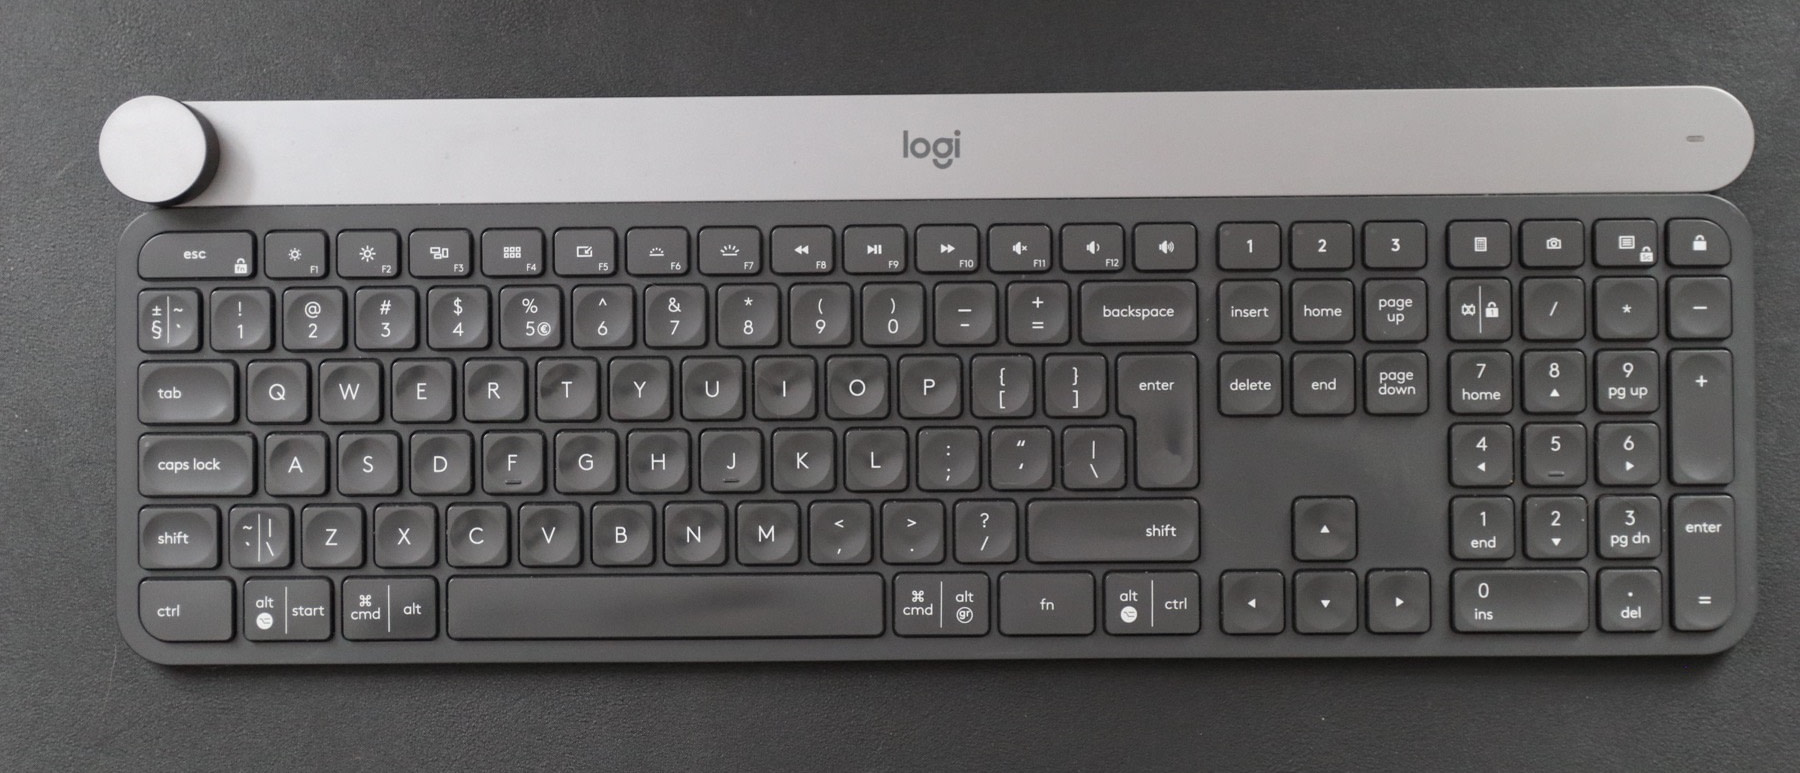 usb keyboard for mac computer